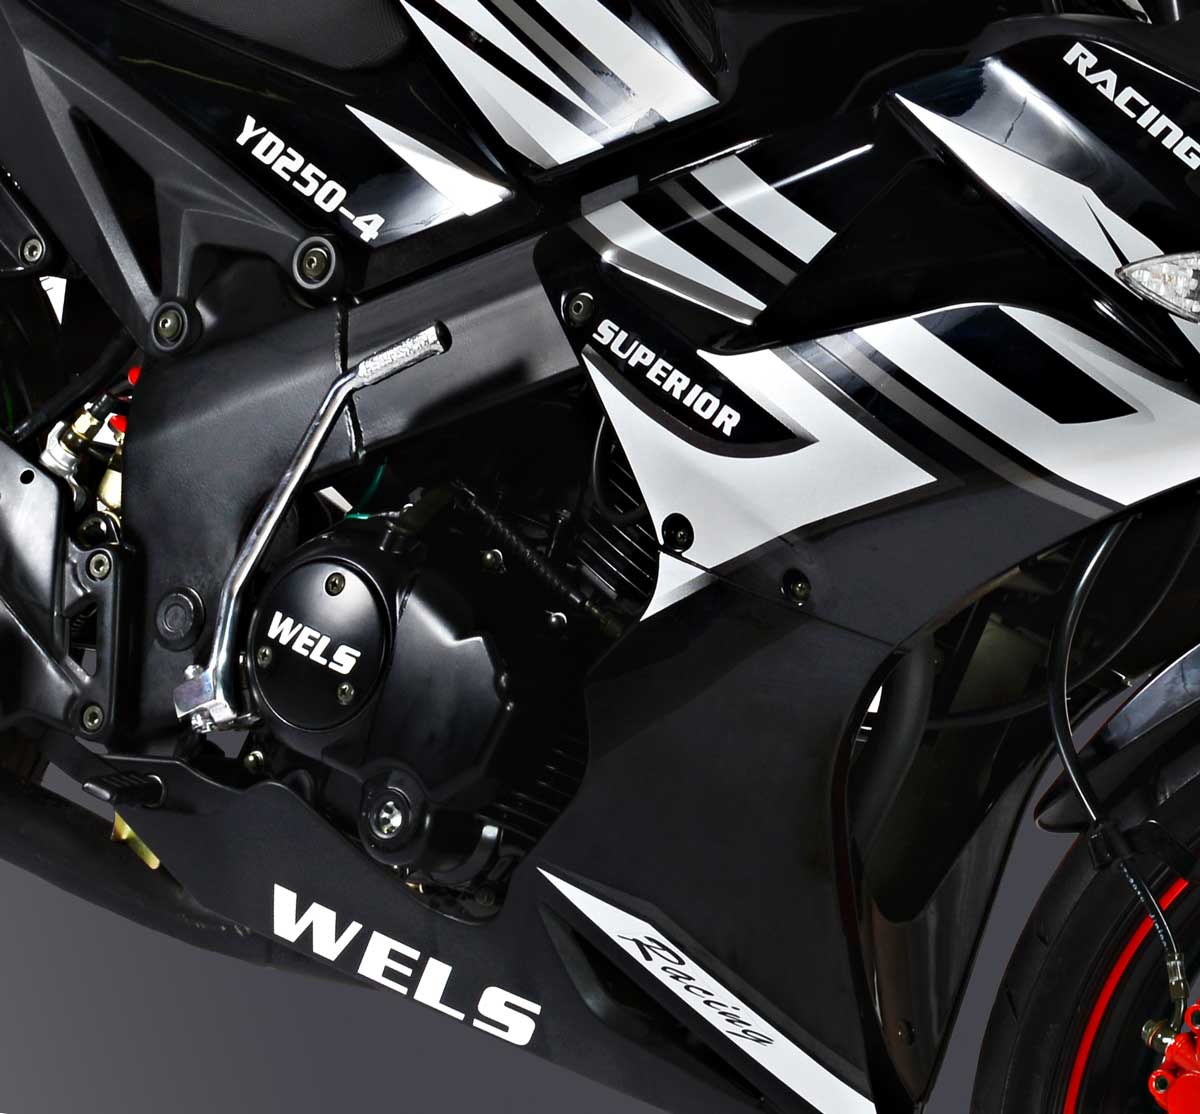 Wels Superior 250cc